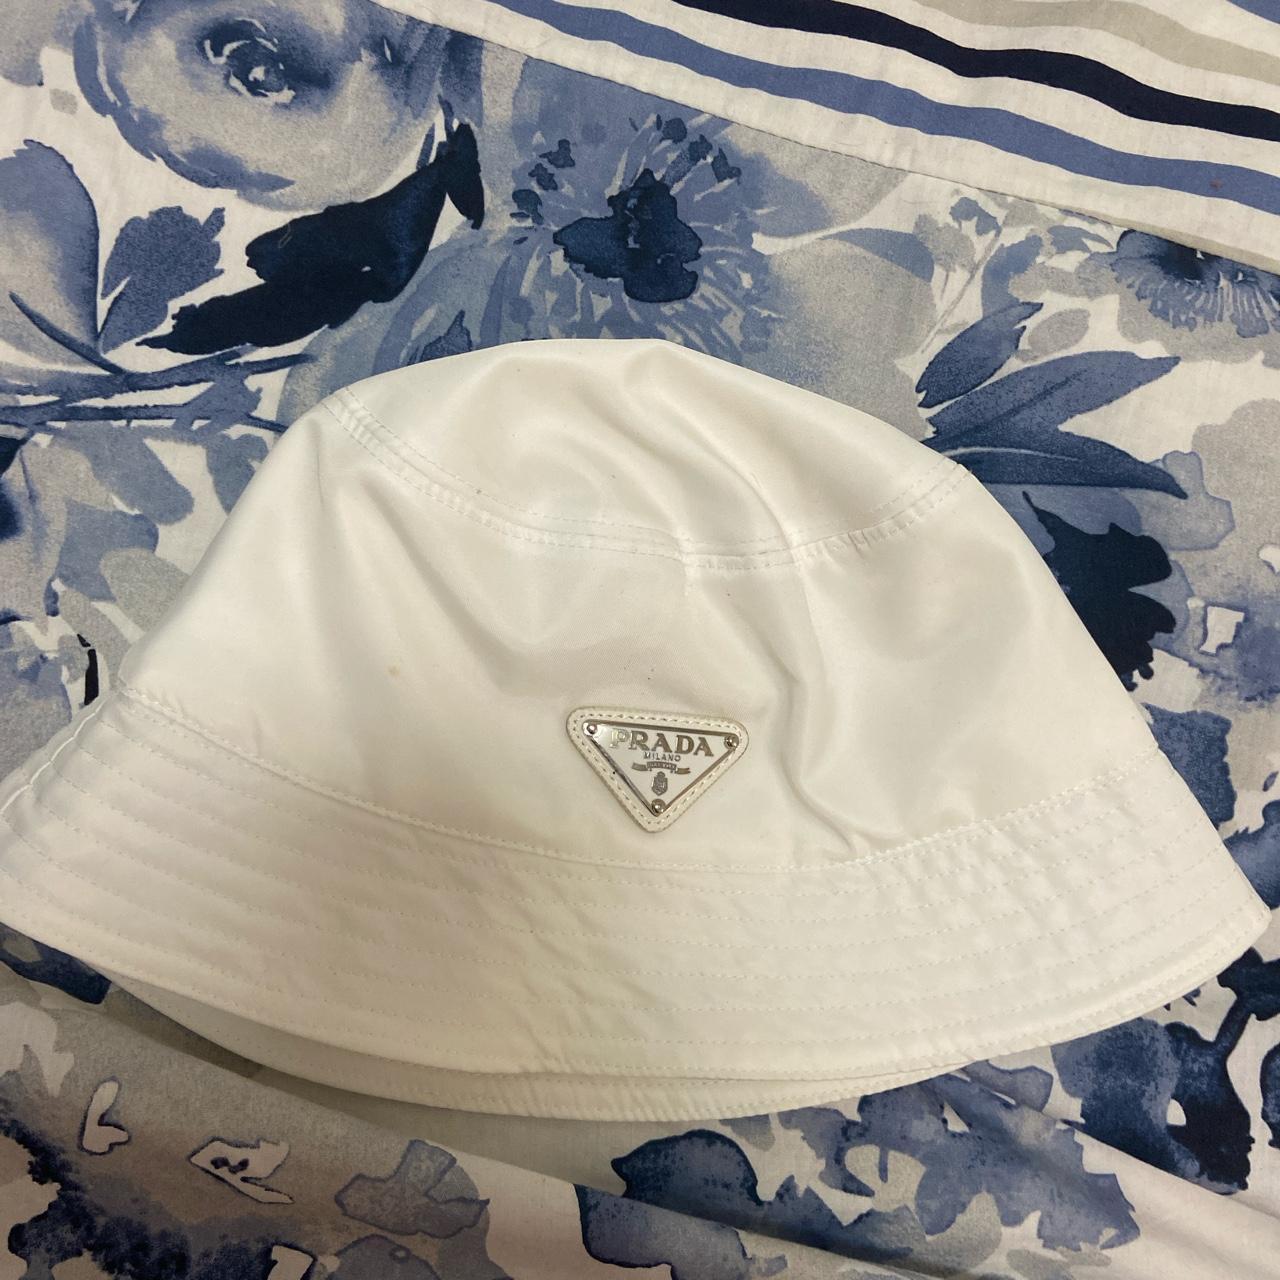 Prada white bucket hat - Depop